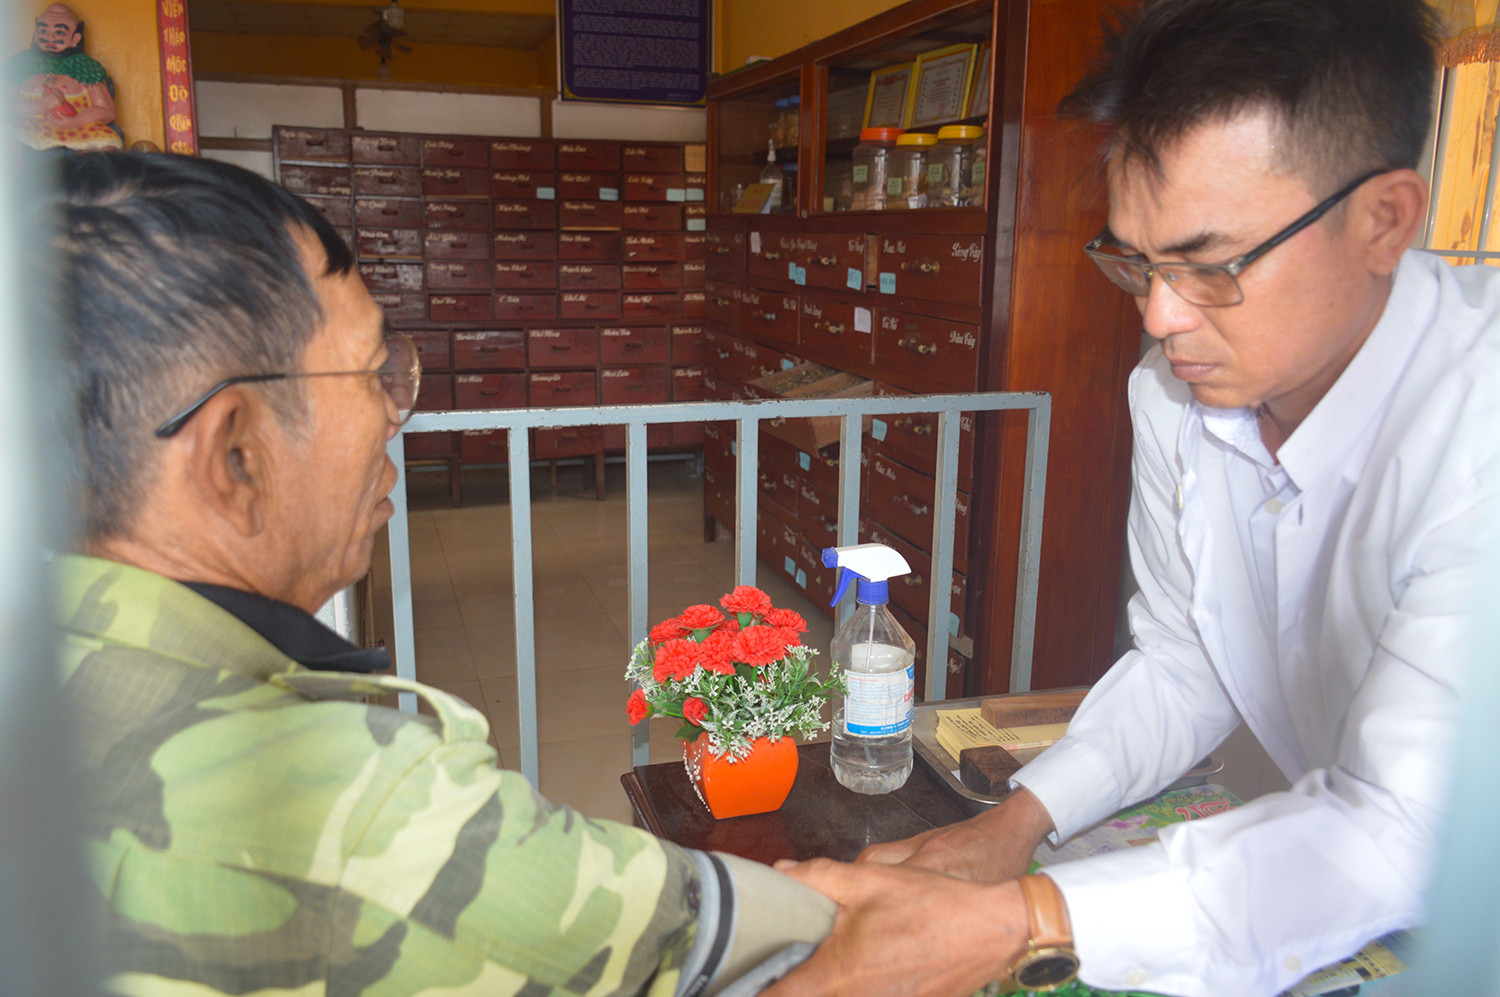 Lương y Phạm Văn Hiểm miệt mài khám chữa bệnh miễn phí cho bệnh nhân nghèo.